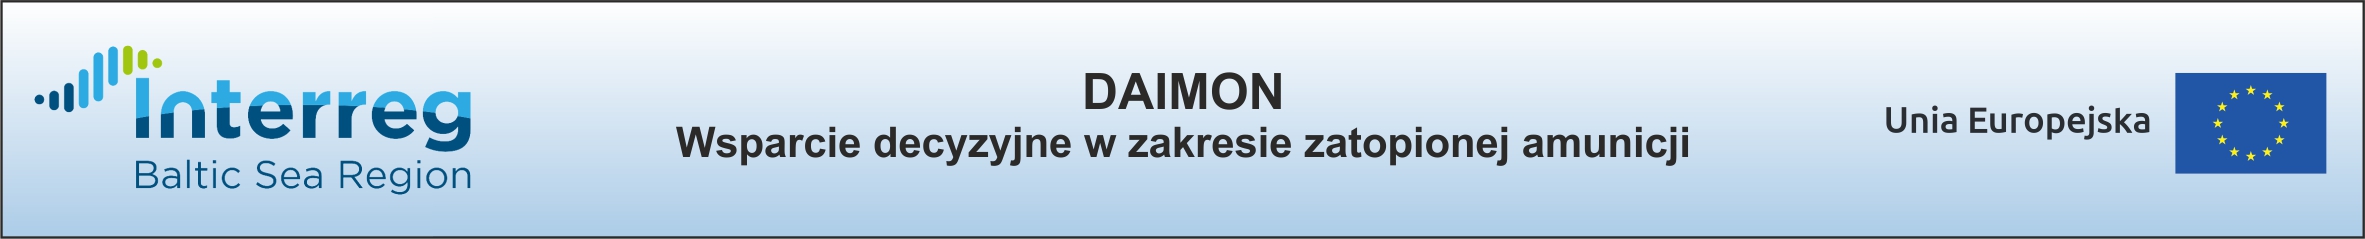 daimon